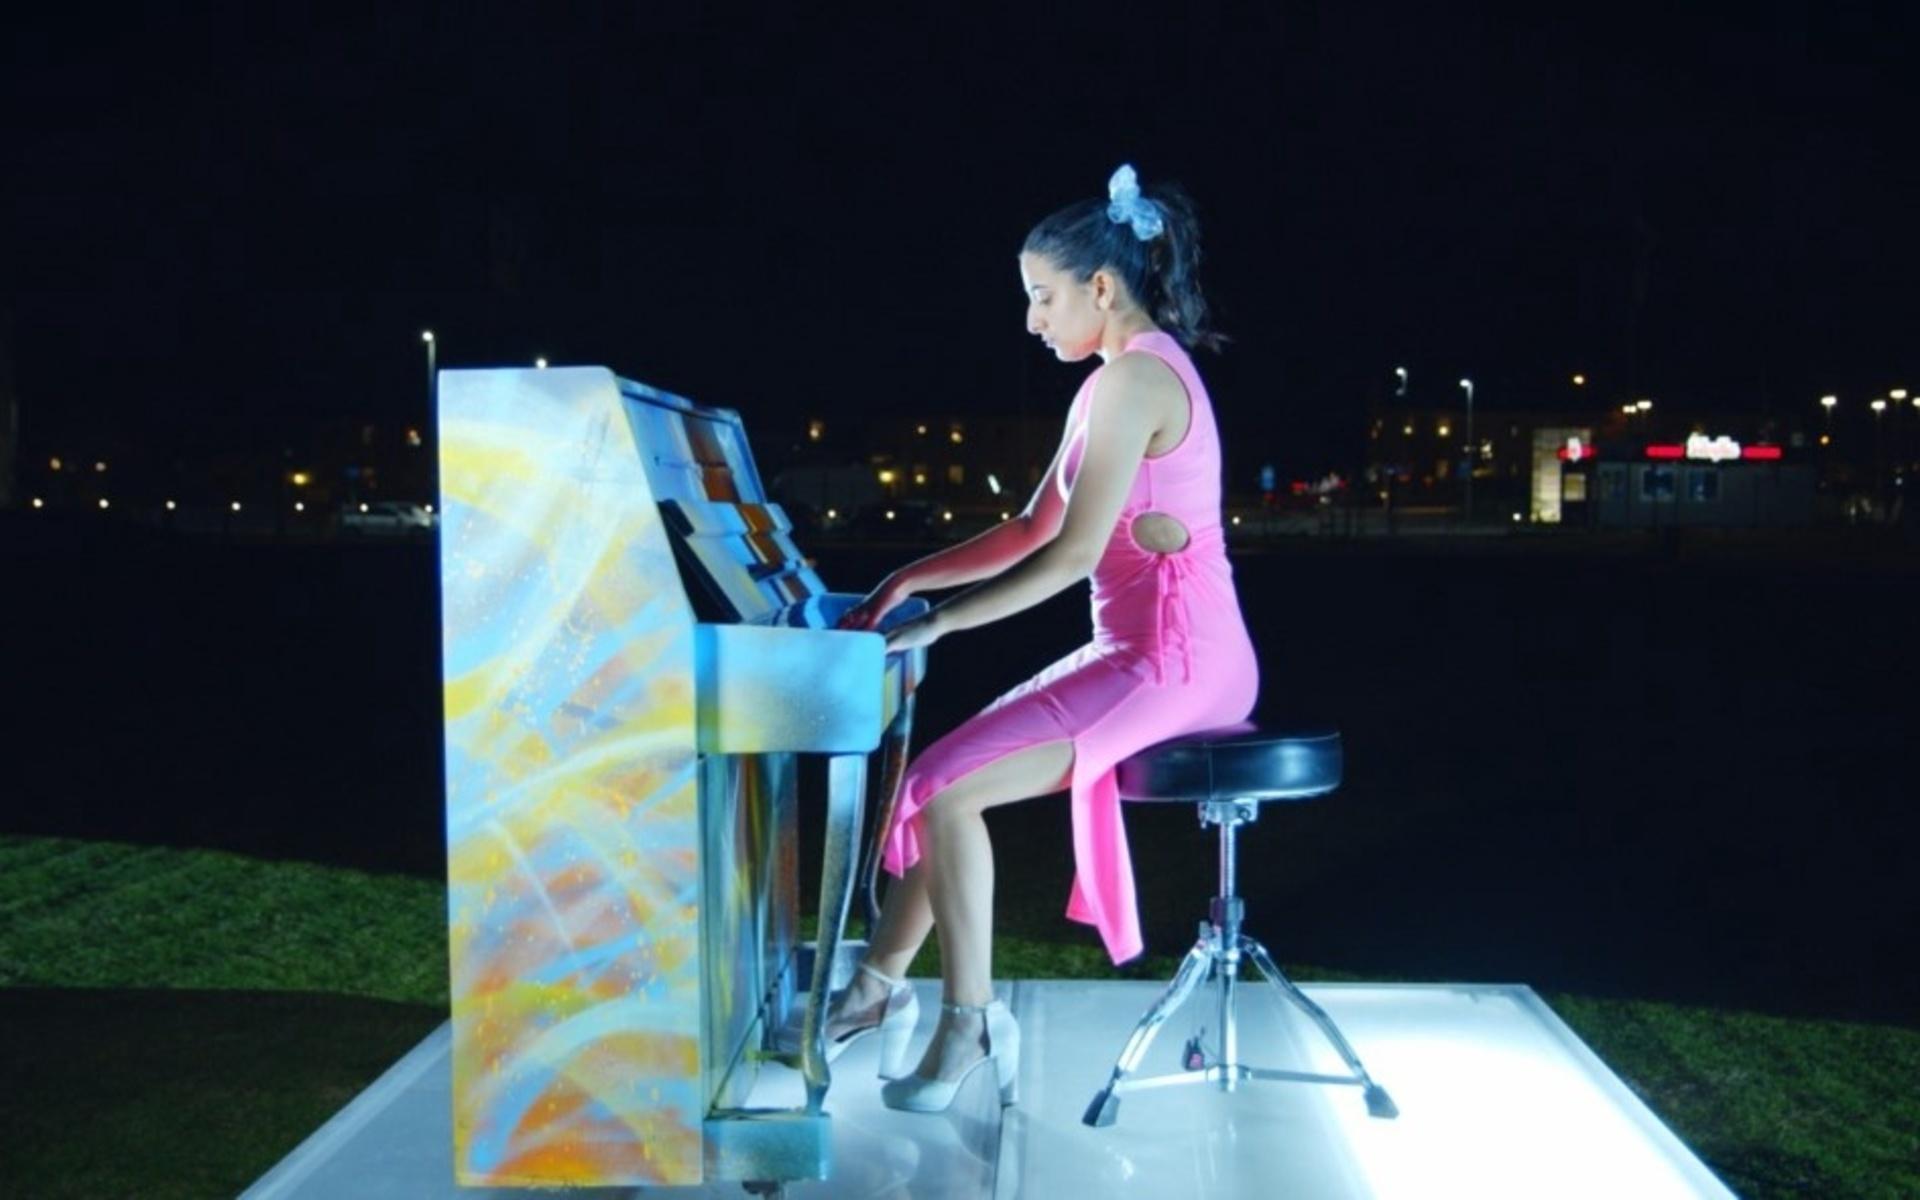 Här är en bild på Maryam när hon sitter vid pianot och sjunger ute i det ensamma mörkret. 